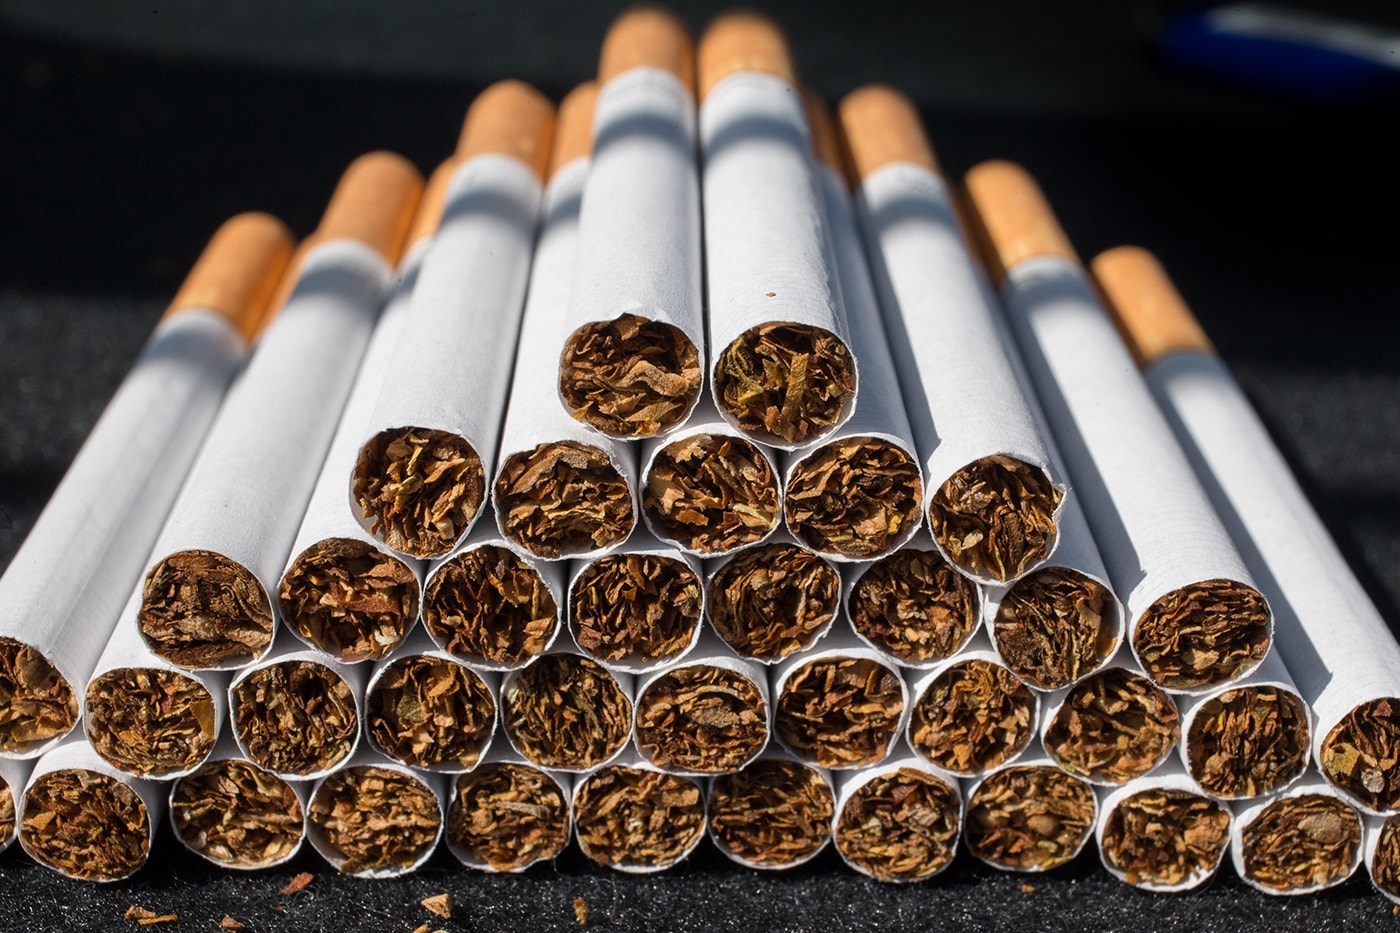 ニュージーランドで2009年以降生まれはたばこを買えない法案が可決　New Zealand ban buying cigarette Tobacco passes legislation preventing people born after 2009